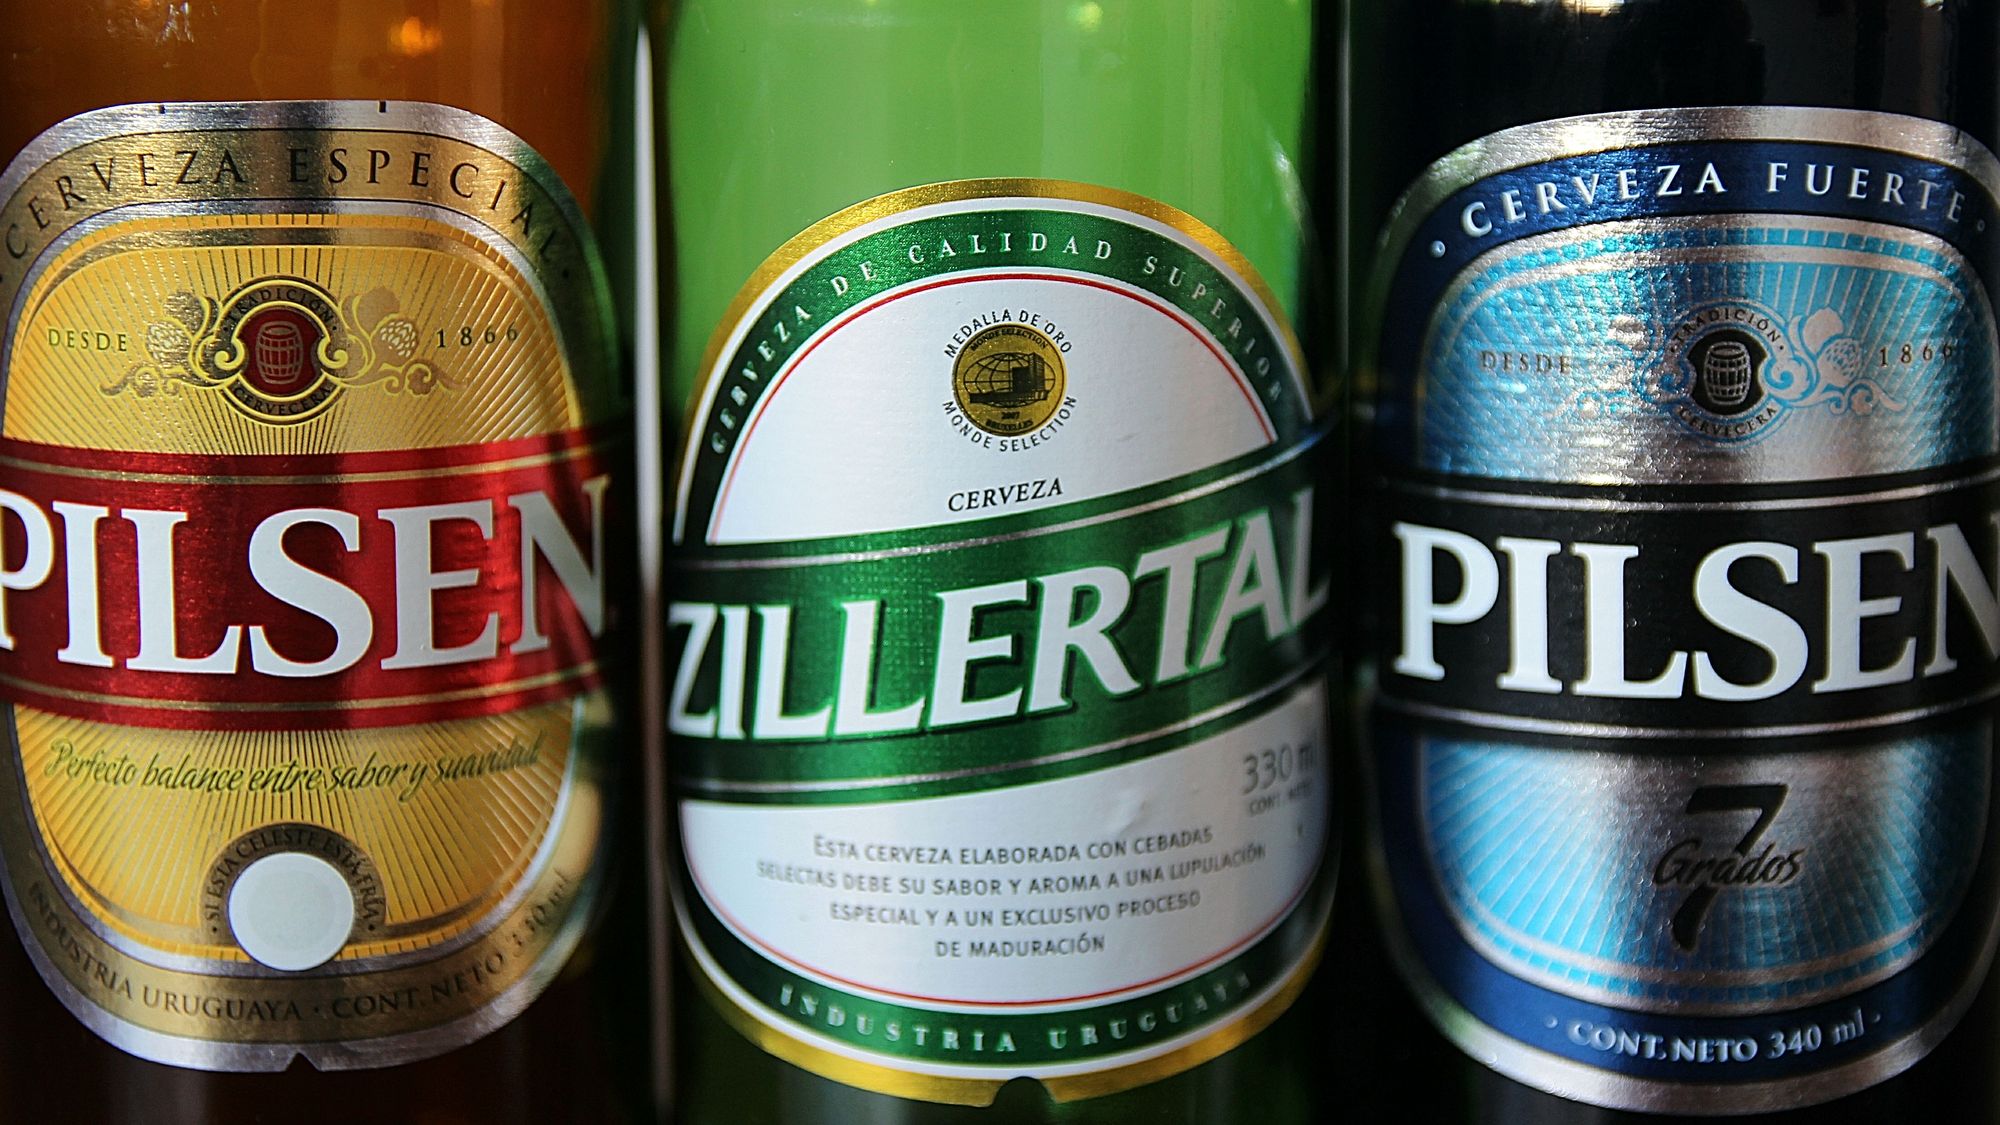 Beers Of Uruguay